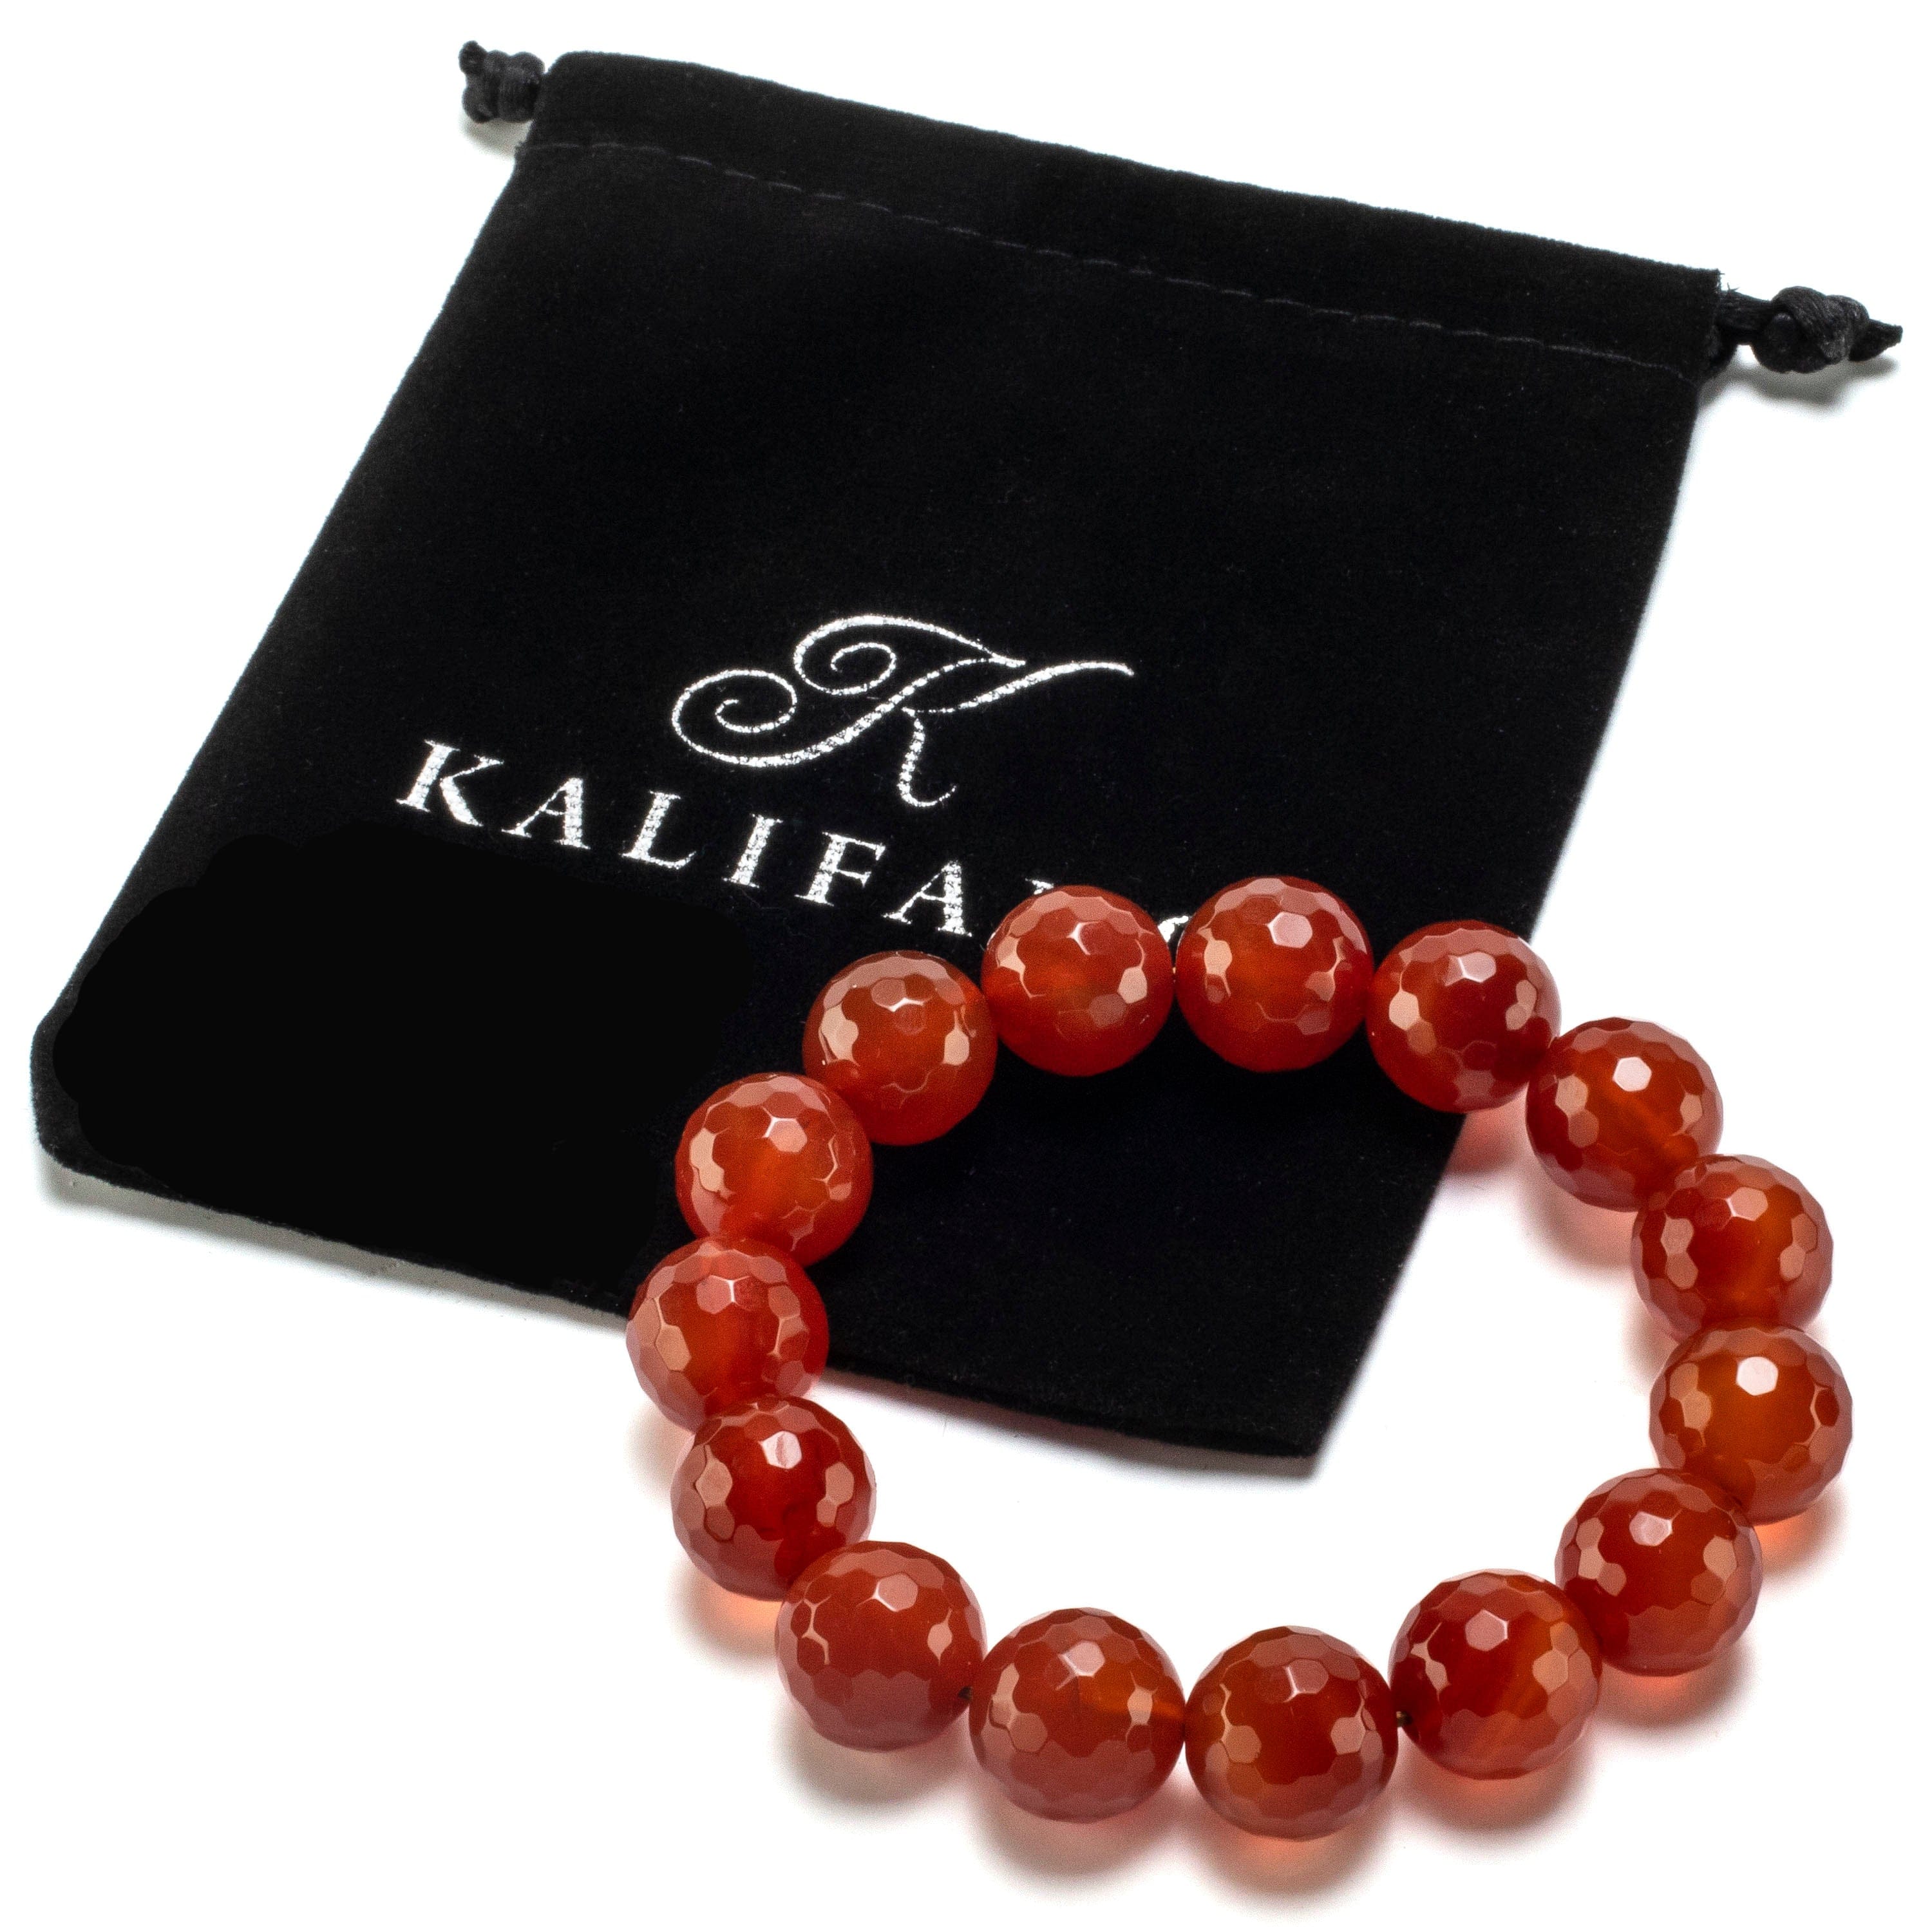 Kalifano Gemstone Bracelets Faceted Carnelian 9mm Round Beads Gemstone Elastic Bracelet BLUE-BGP-050